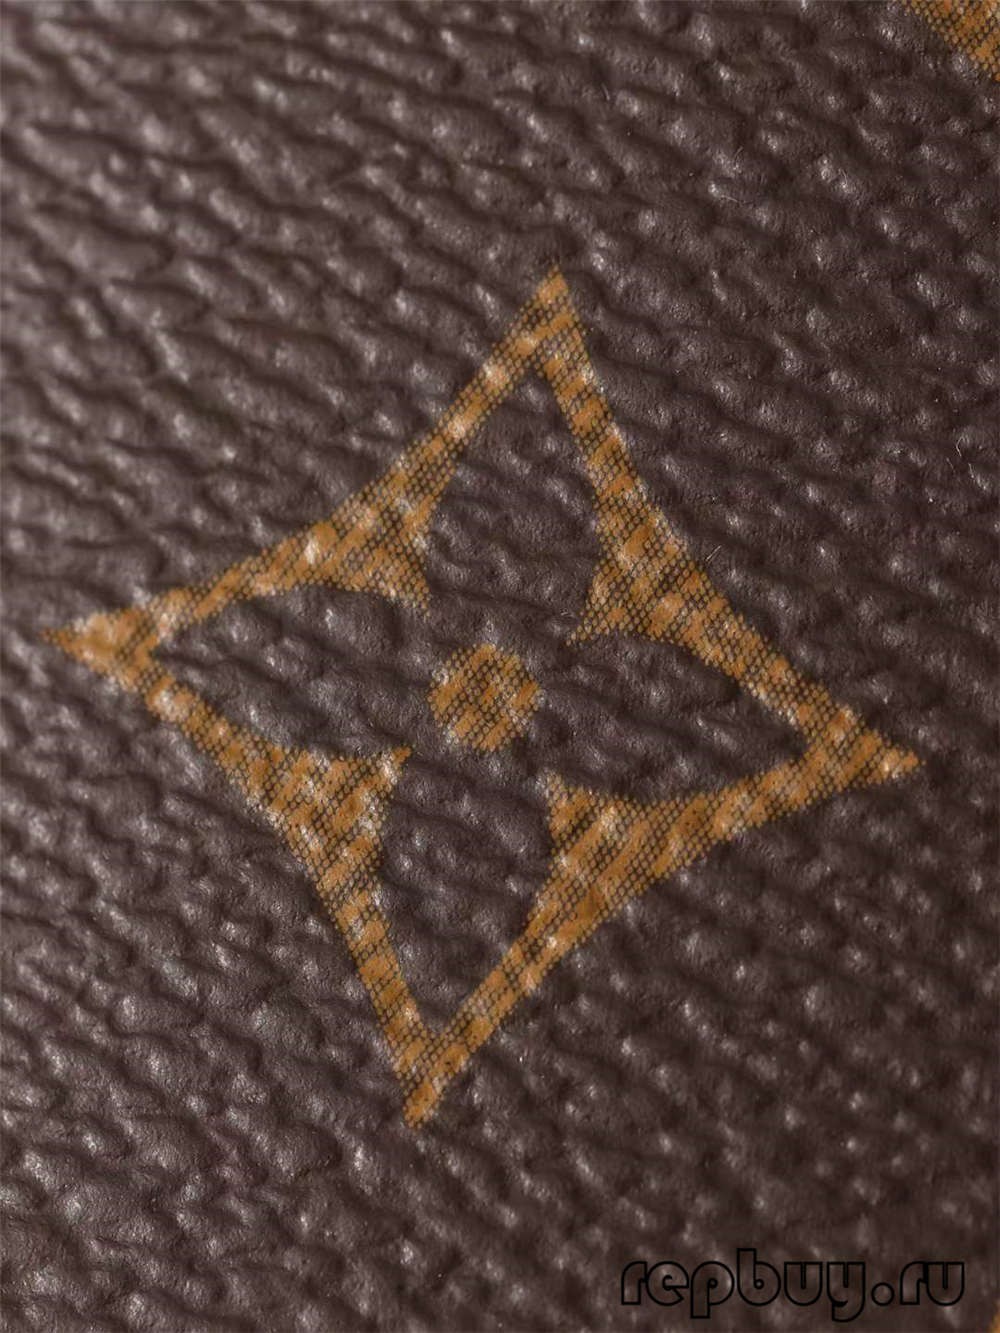 Louis Vuitton M53152 Alma BB replikaväskor av högsta kvalitet (2022 uppdaterad)-Bästa kvalitet Fake Louis Vuitton Bag Online Store, Replica designer bag ru